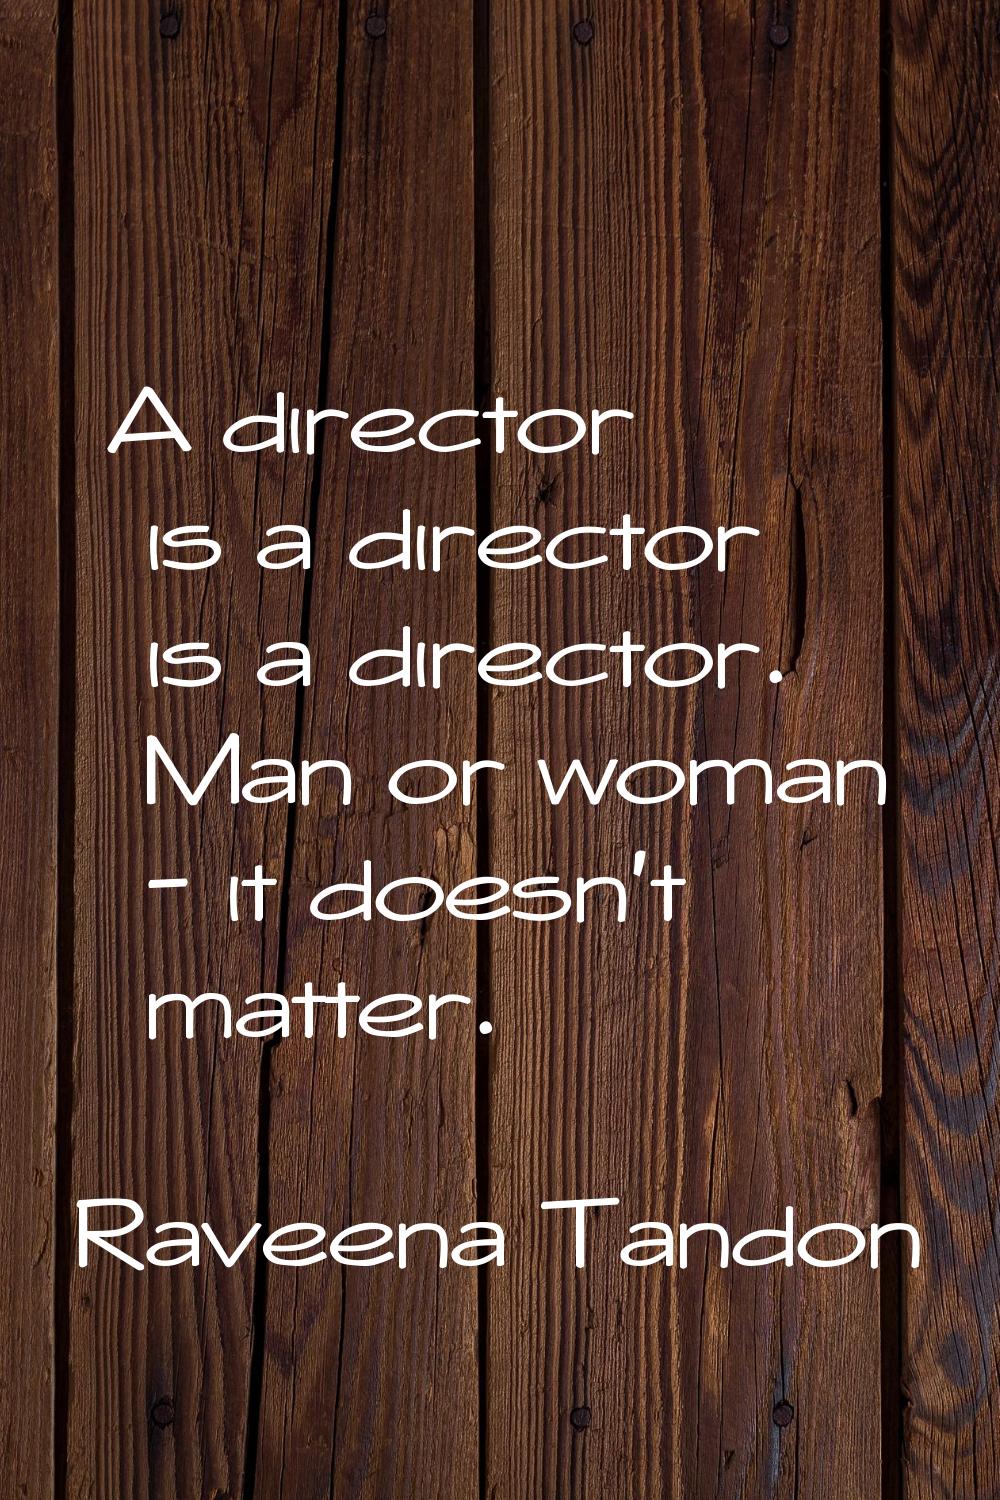 A director is a director is a director. Man or woman - it doesn't matter.